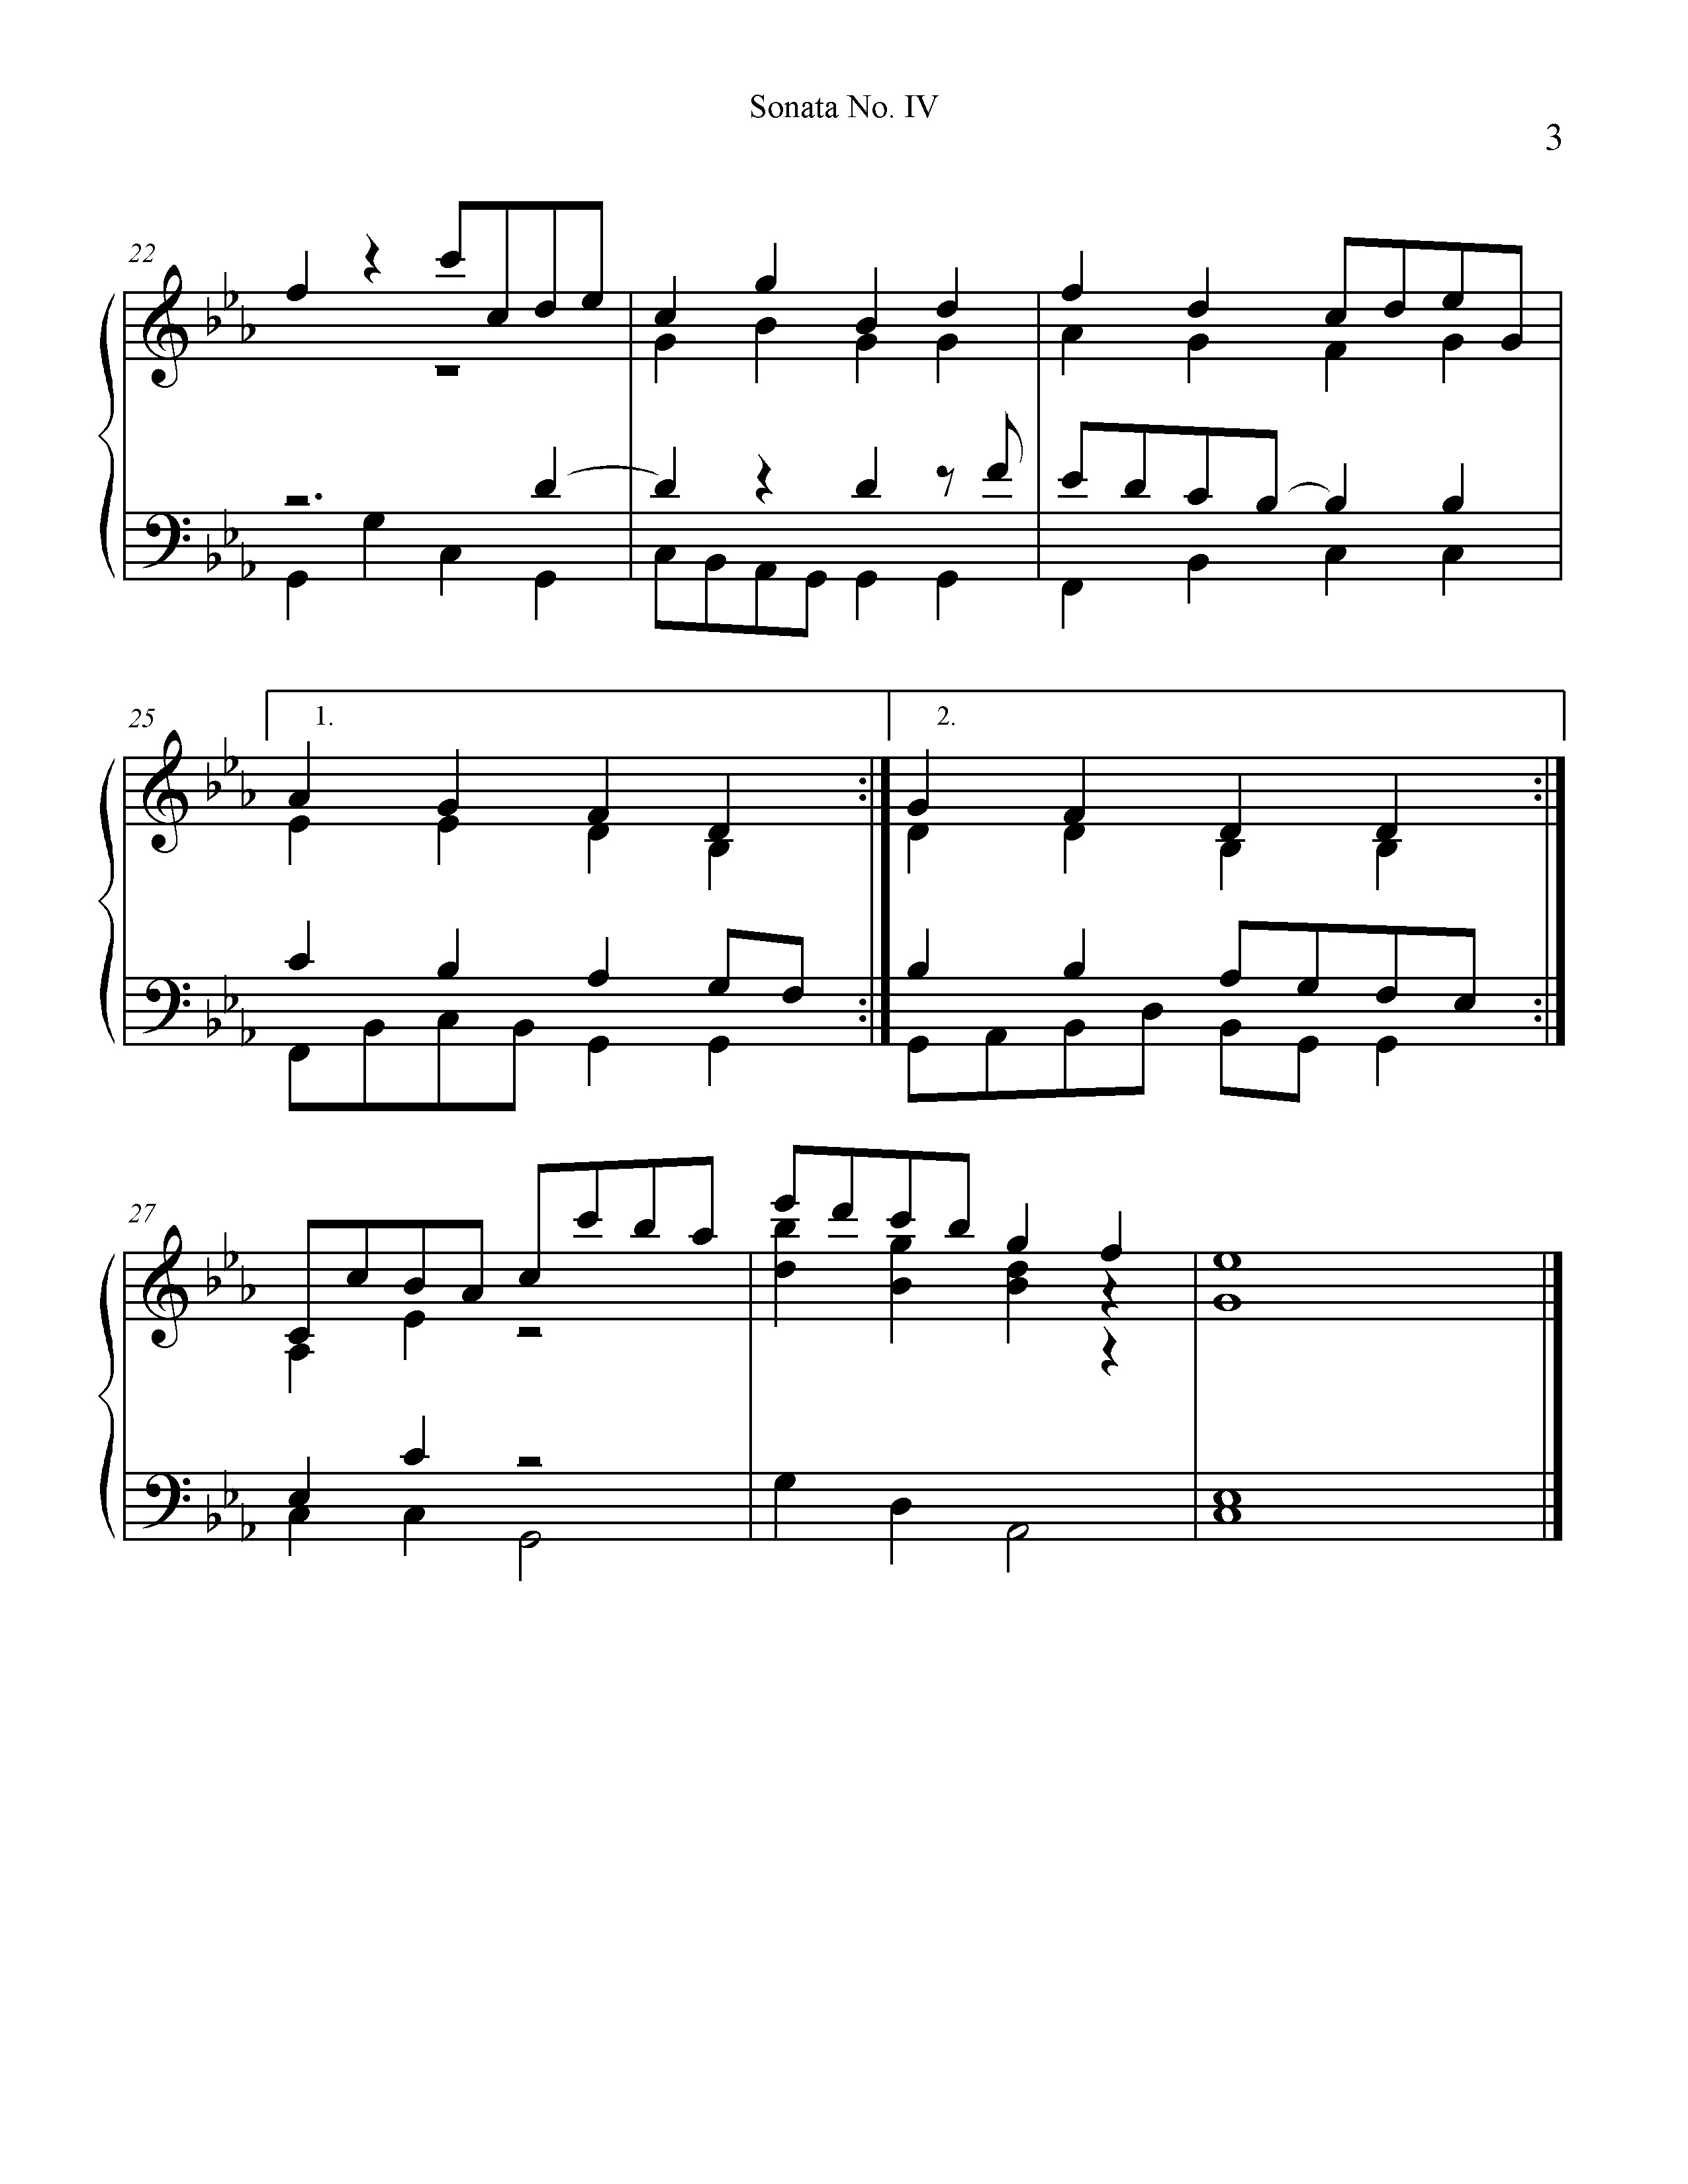 Sonata IV PT.3